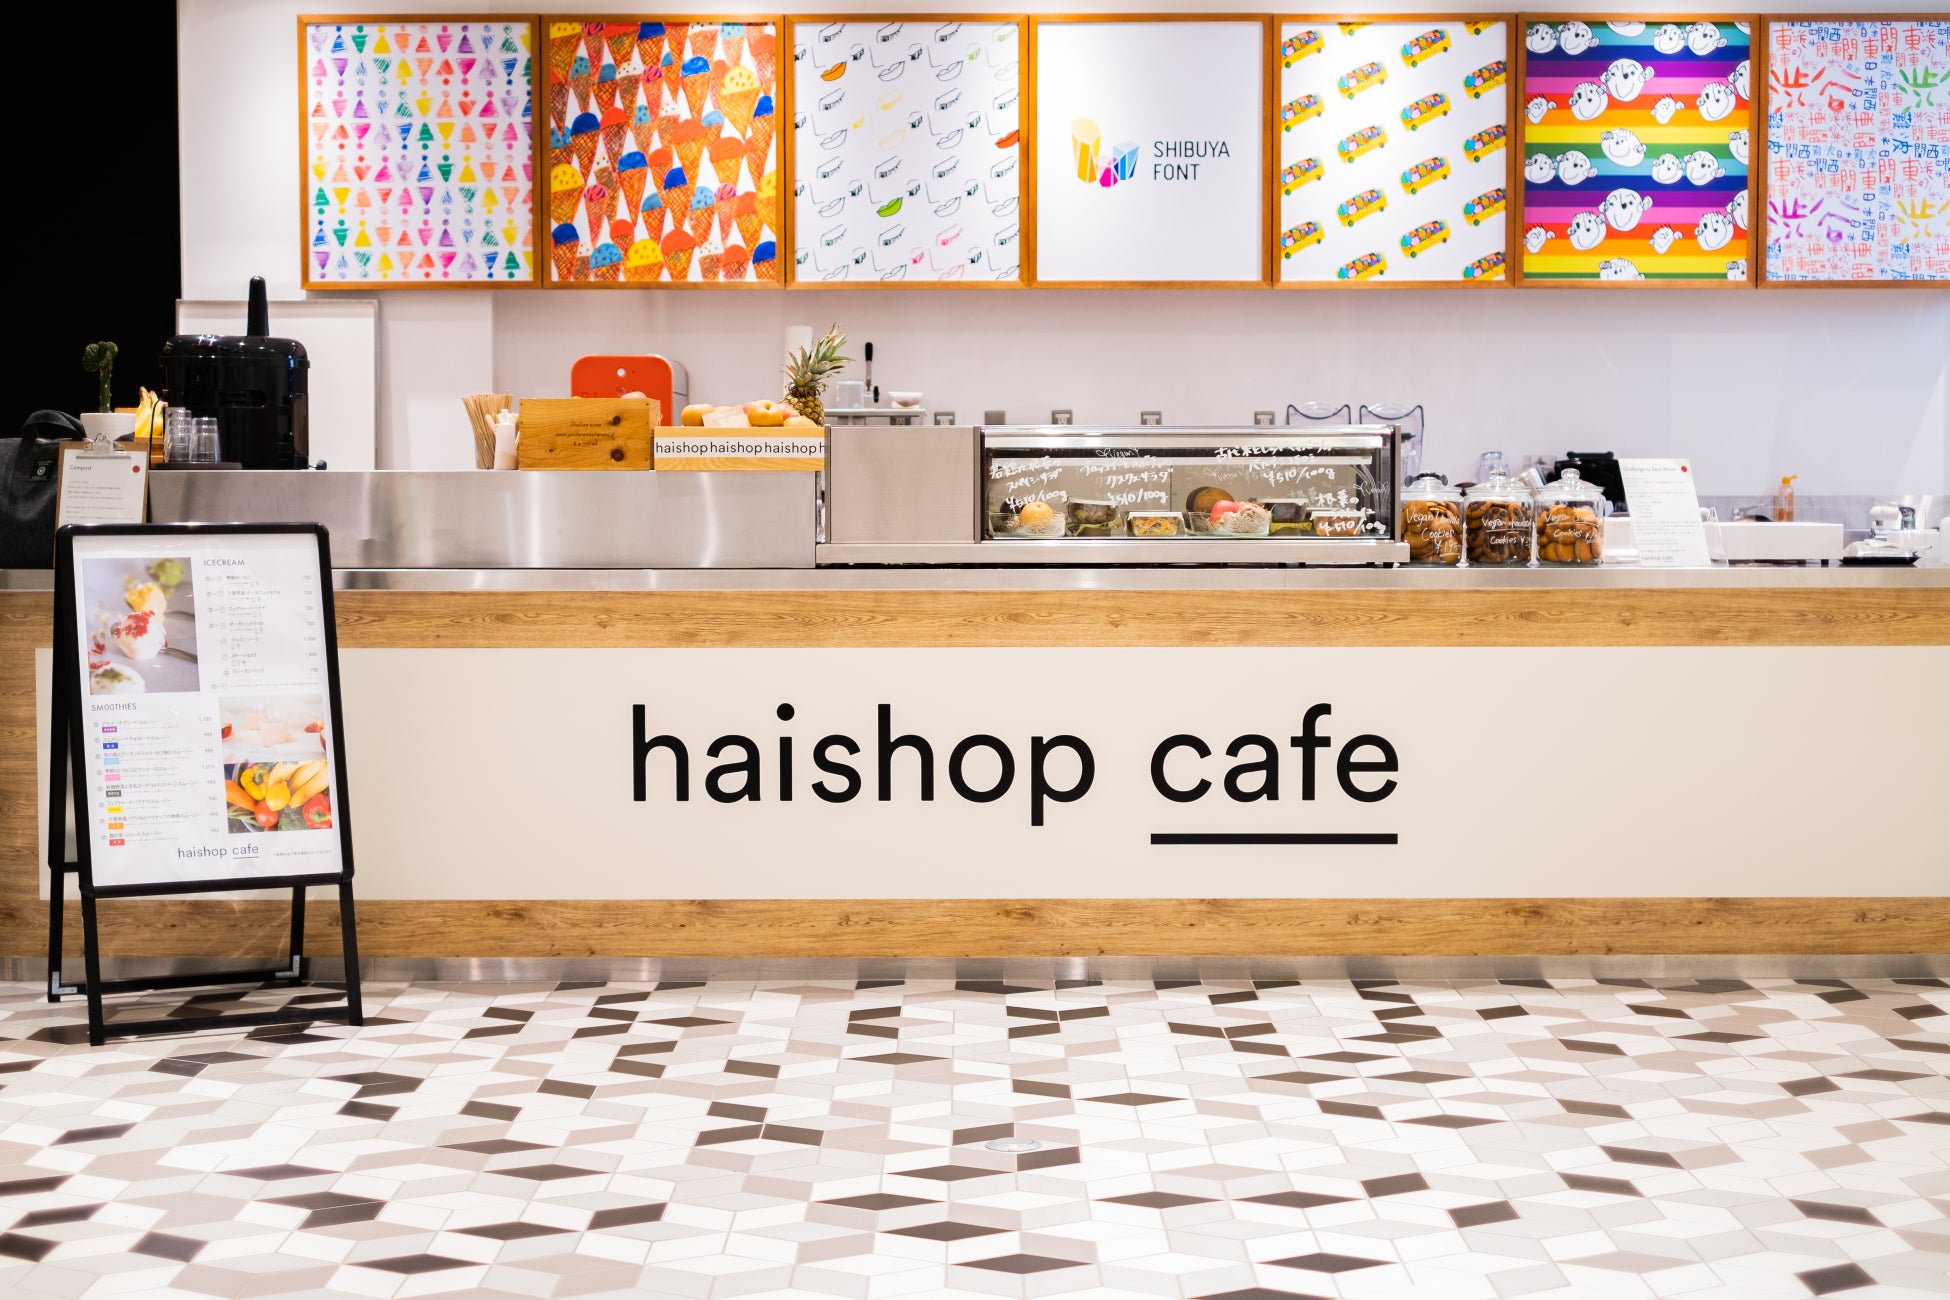 【クリスマス限定】ヴィーガン&グルテンフリーアイスケーキ3種の予約を開始@haishop cafe 渋谷スクランブルスクエア店のサブ画像5